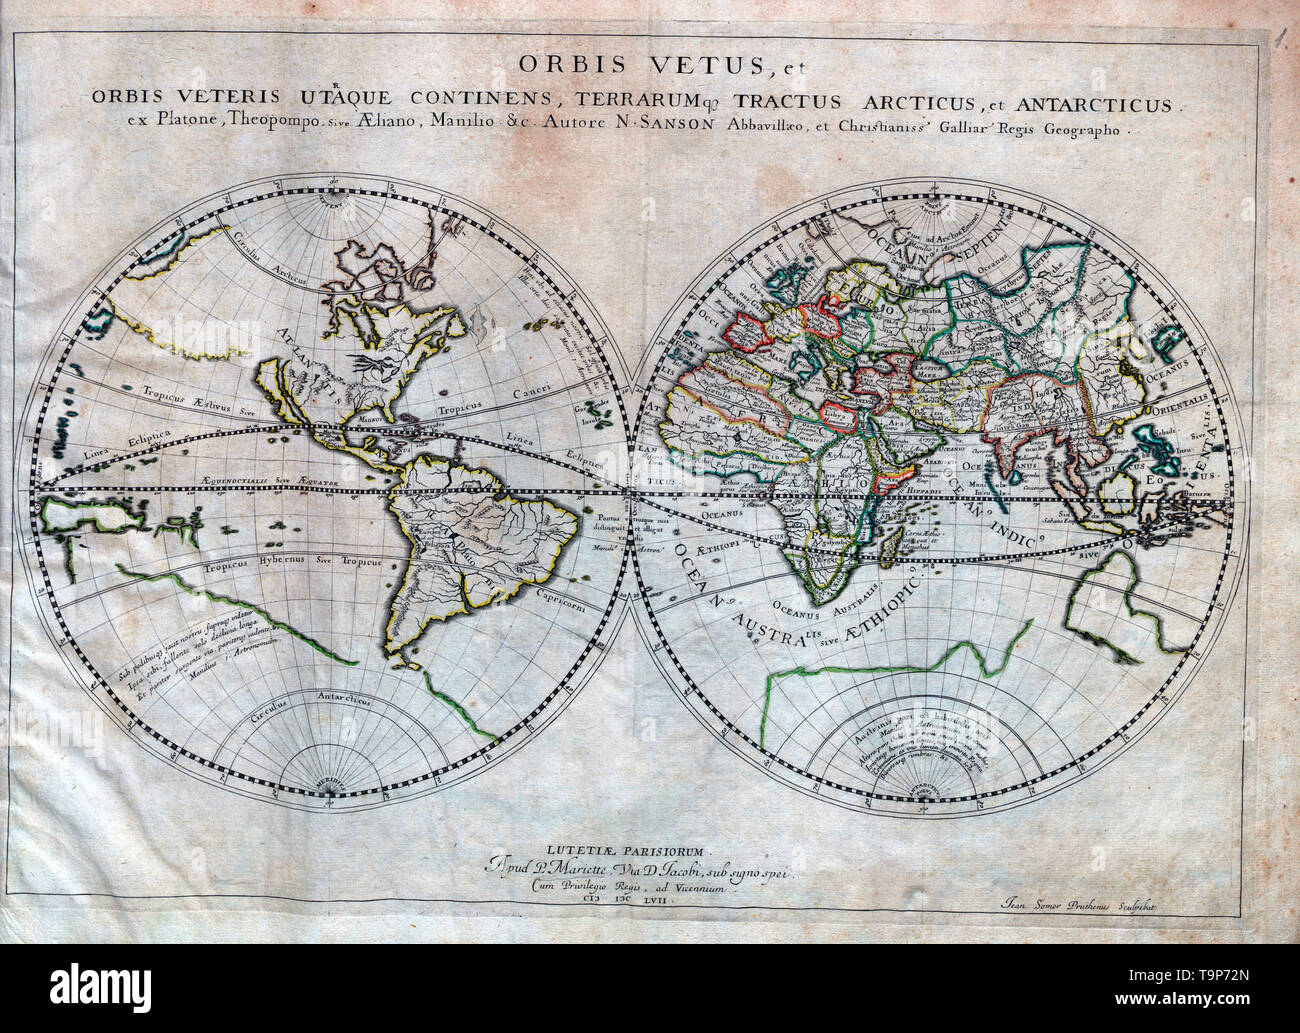 Karte von Orbis Vetus - Erde - Sanson Atlas, um 1700 Stockfoto